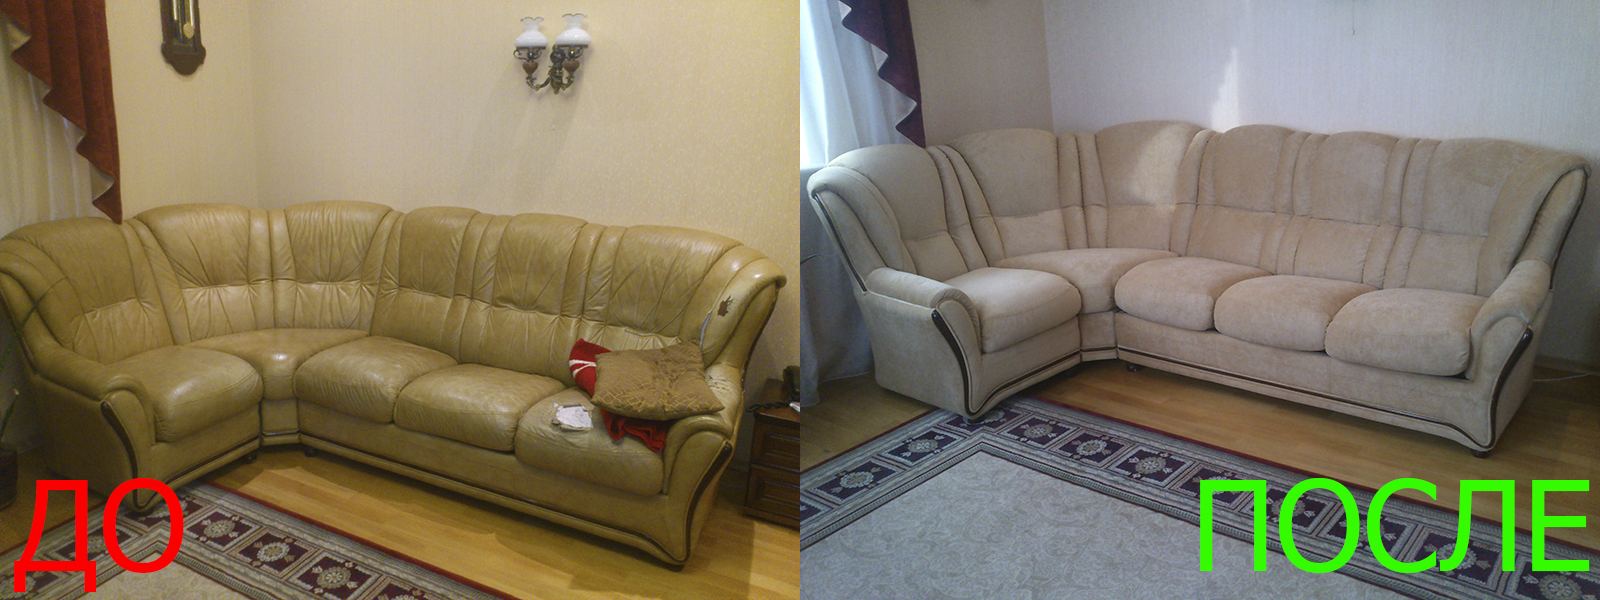 Обивка углового дивана в Краснодаре разумные цены на услуги, опытные специалисты